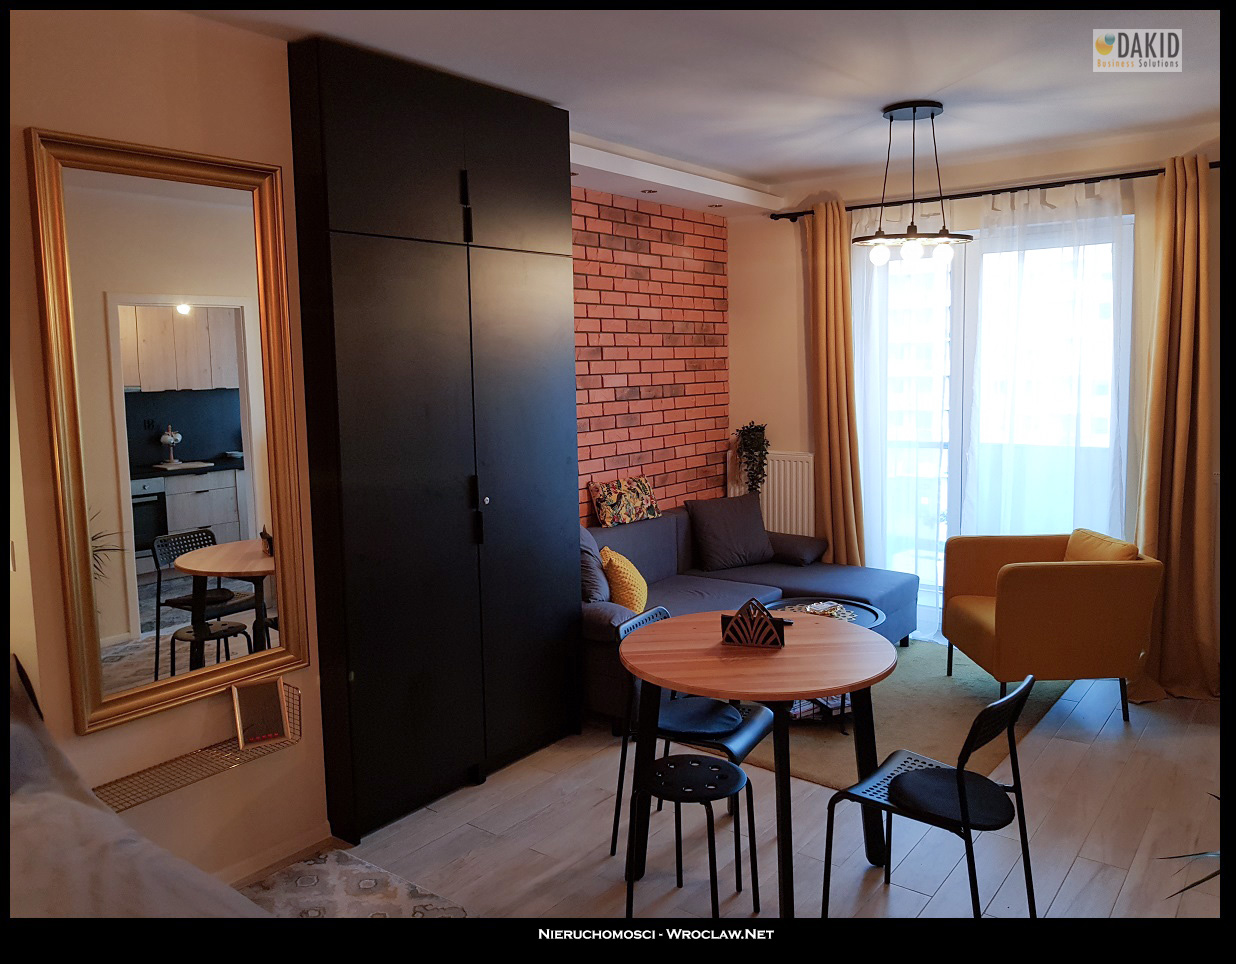 apartments for rent Wroclaw Zakładowa